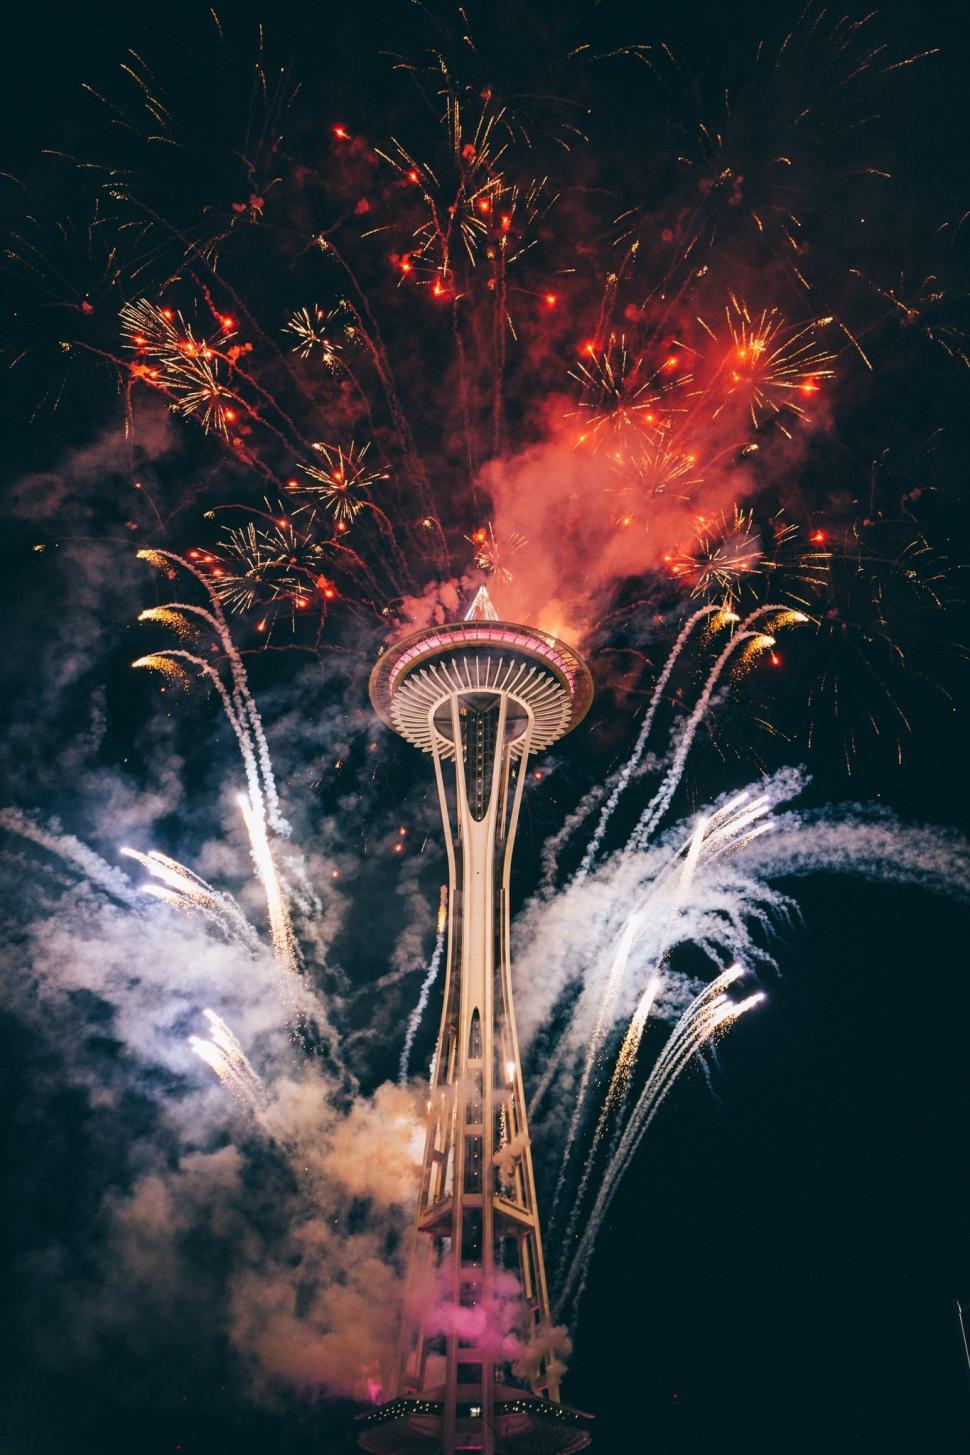 Free Image of The Space Needle tower Seattle, Washington 